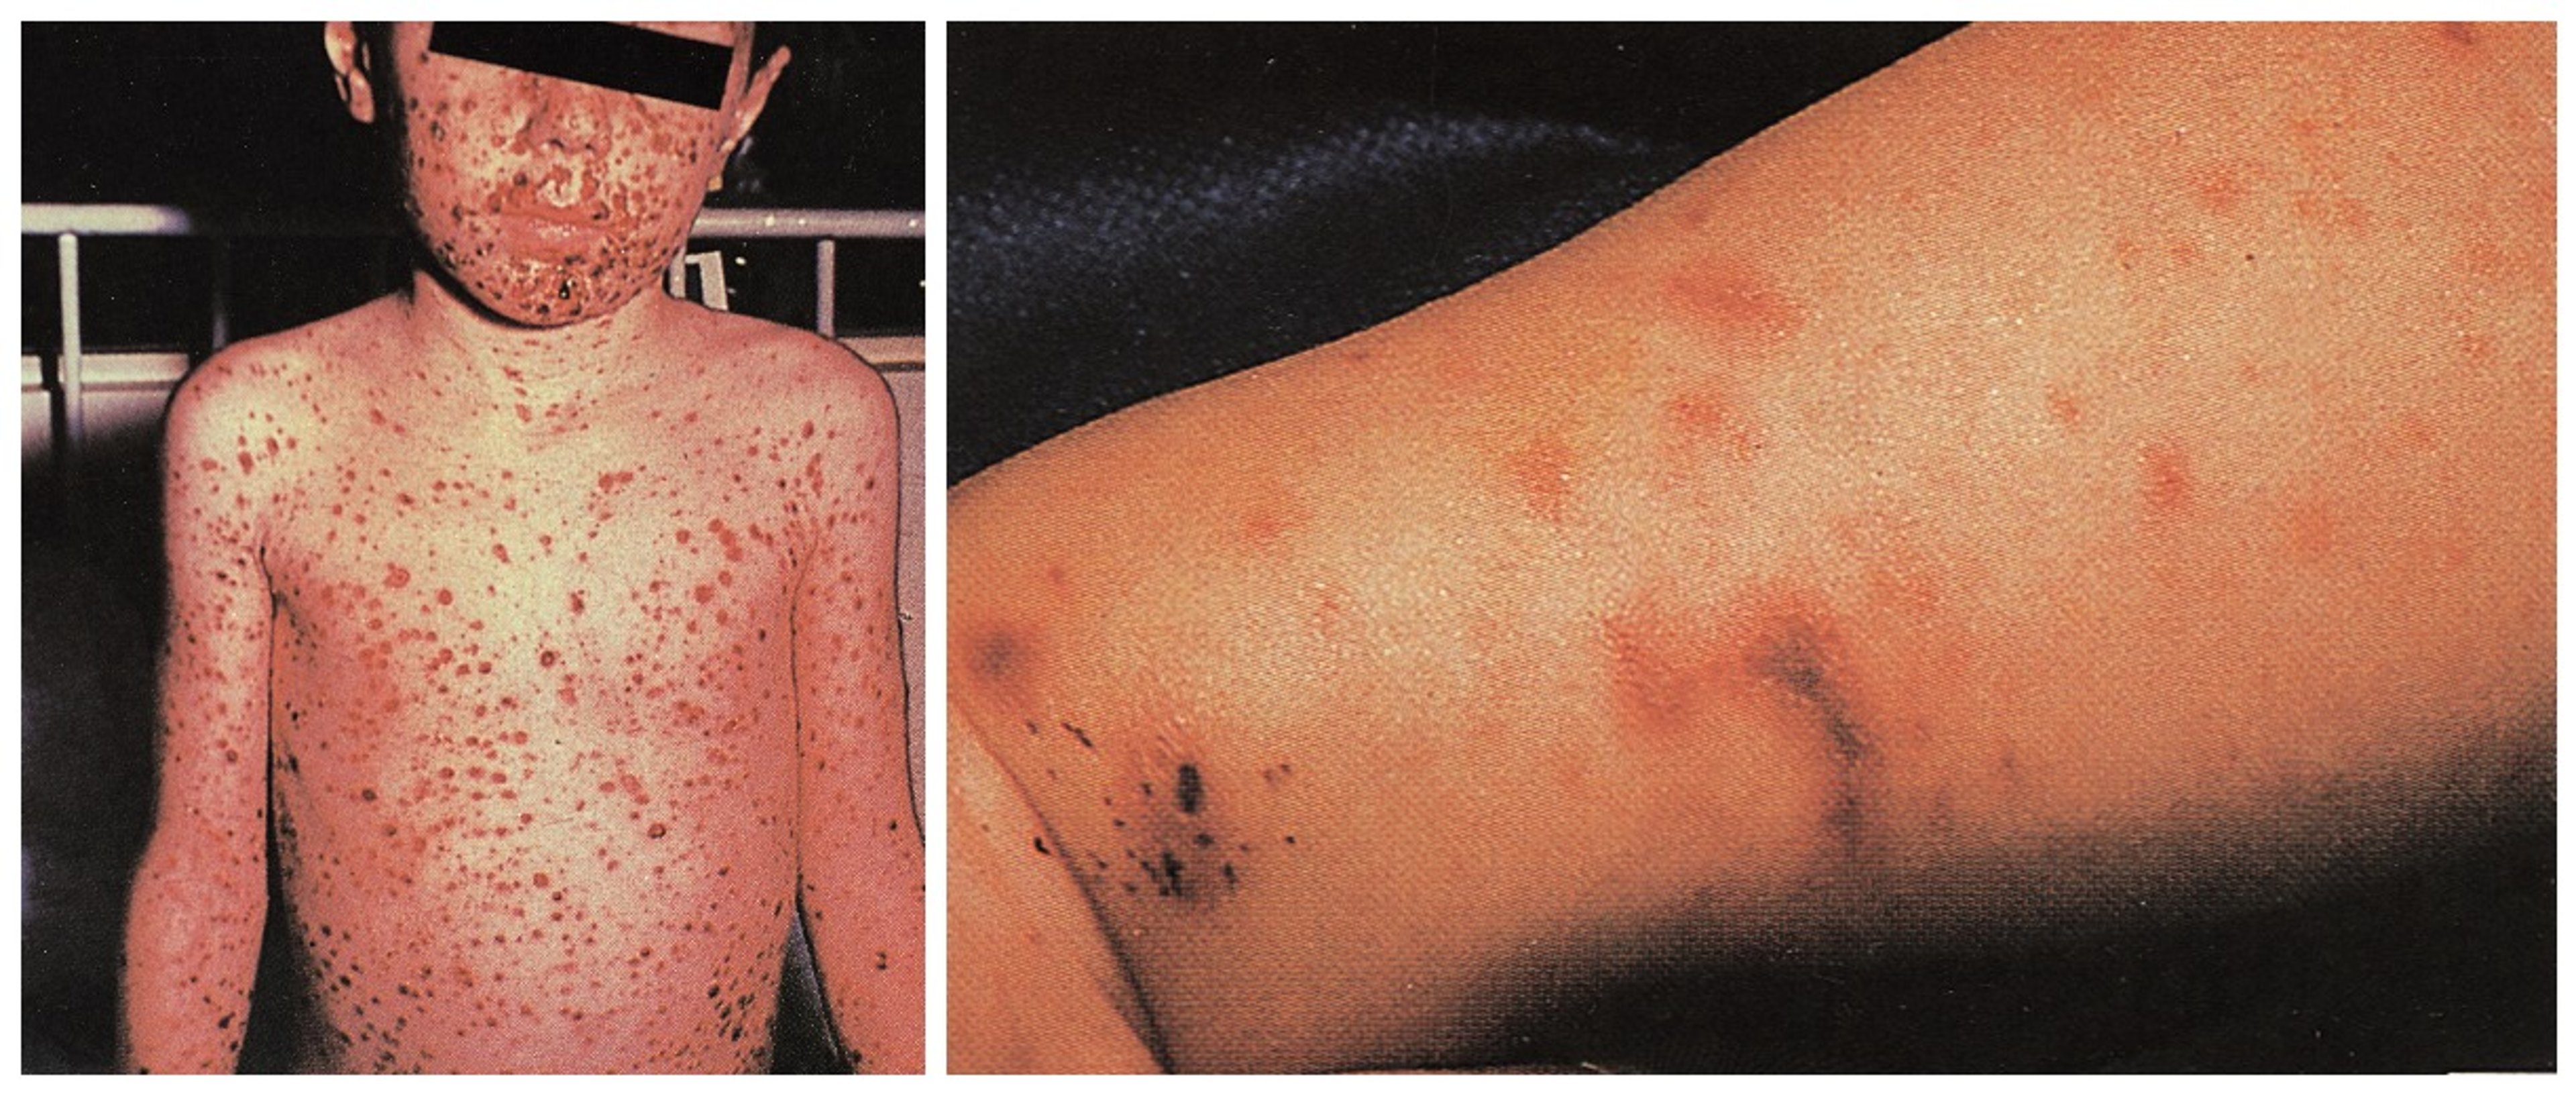 Eruzione cutanea diffusa dovuta a infezione da meningococco nel sangue